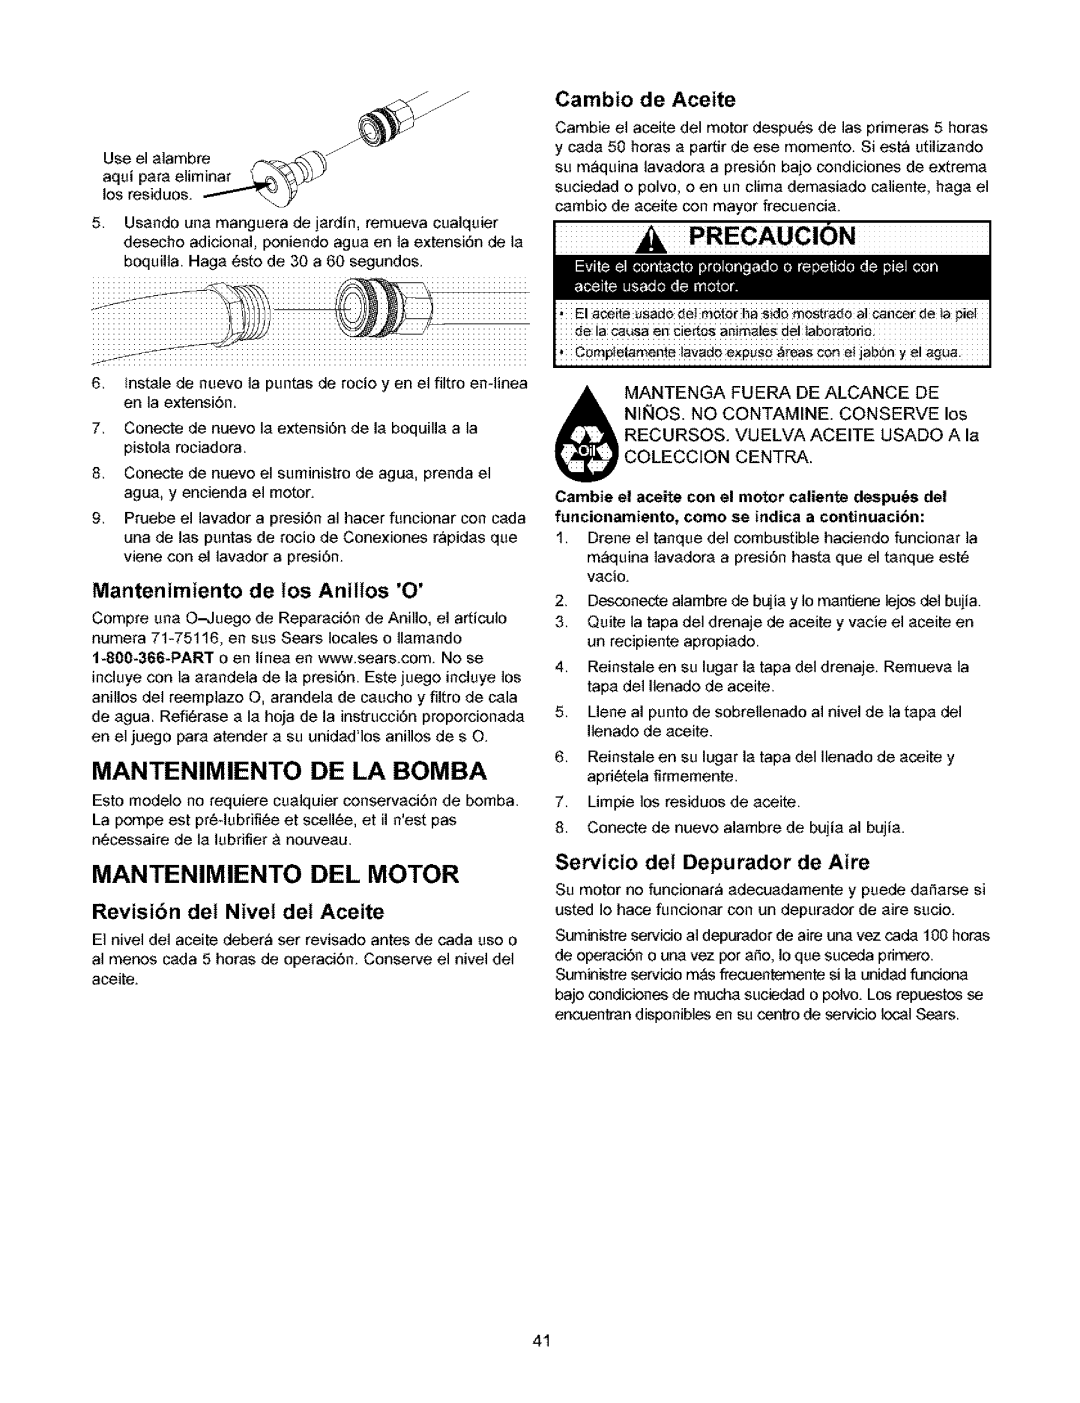 Craftsman 580.753 manual Mantenimiento De La Bomba, Mantenimiento Del Motor, Precaucion, Cambio de Aceite 